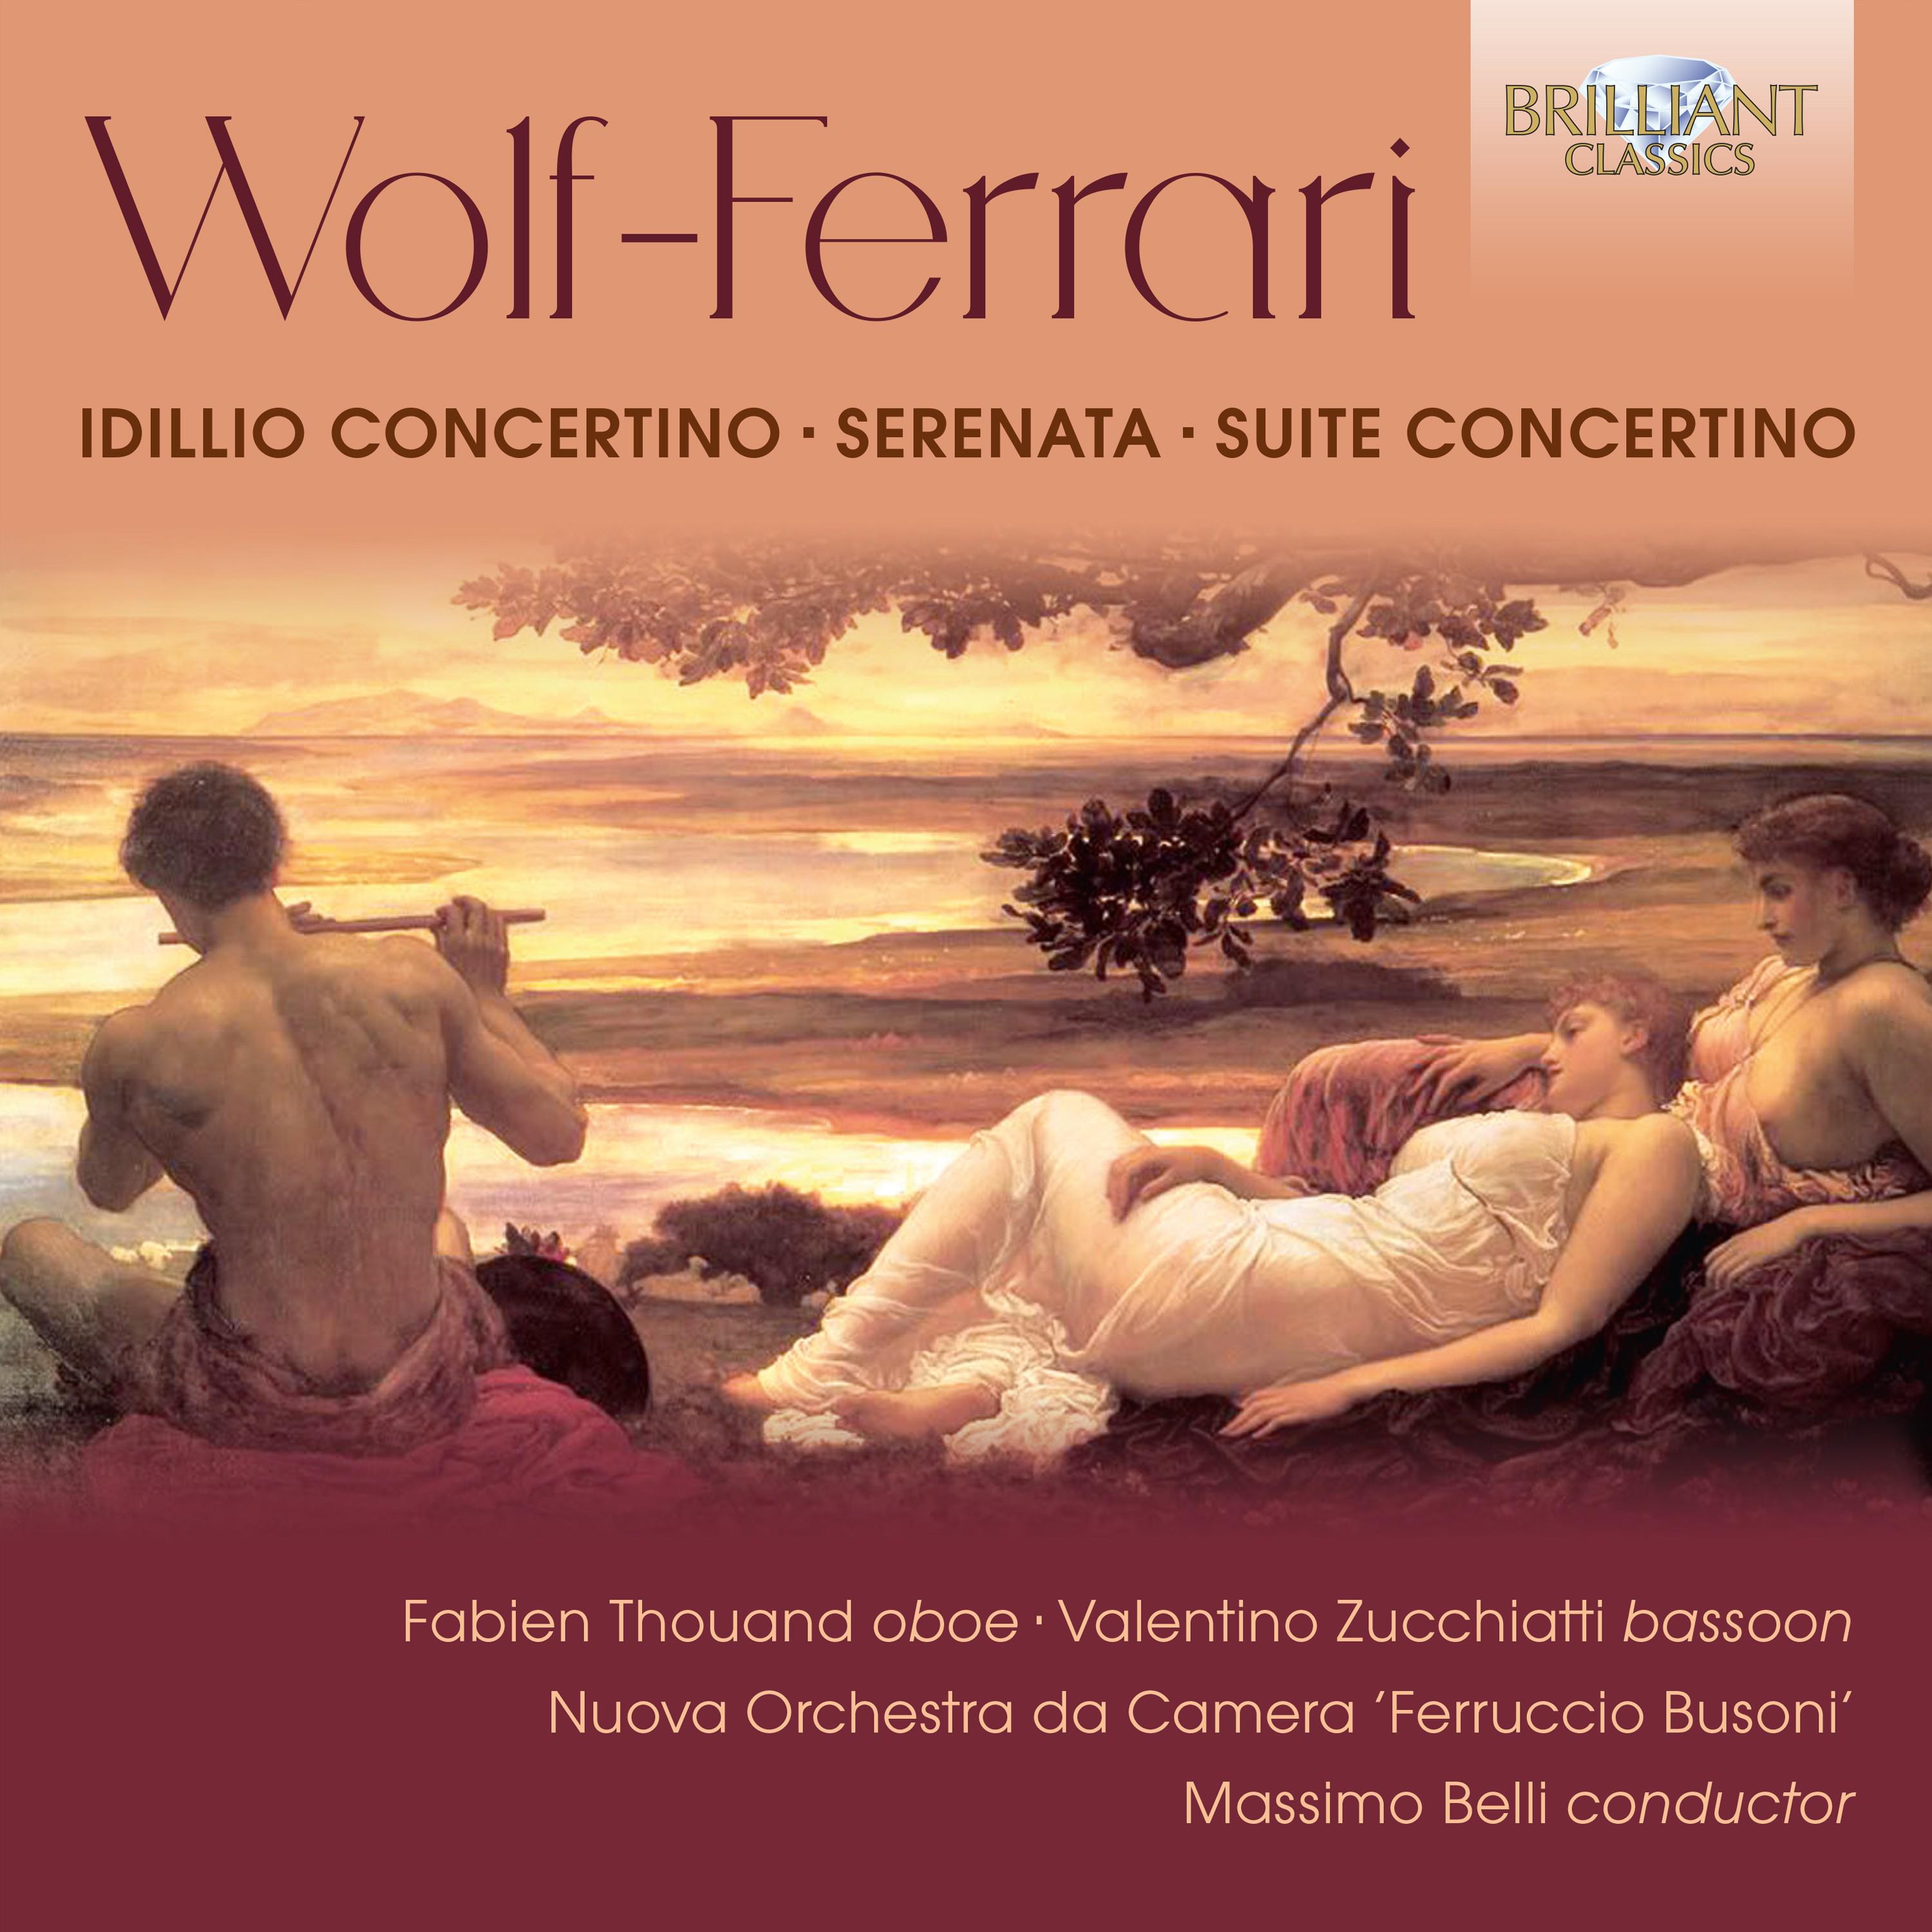 Suite - Concertino in F Major, Op. 16: II. Strimpellata - Presto